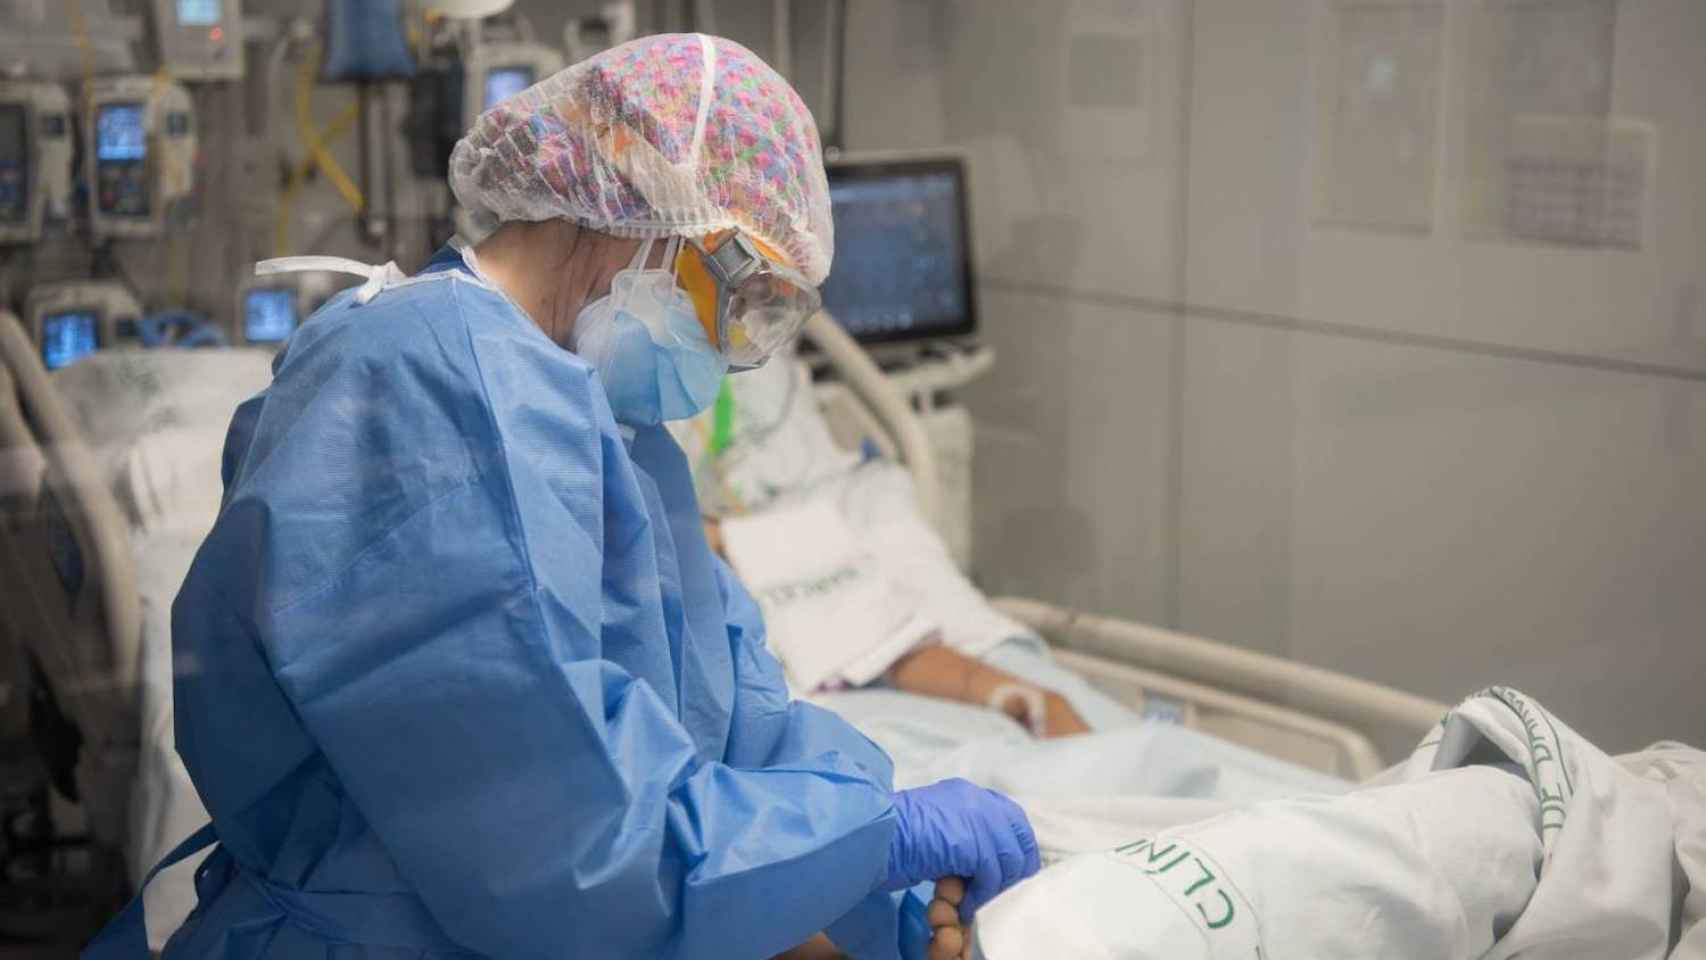 Una trabajadora sanitaria durante la pandemia del covid-19 en el Hospital Clínic de Barcelona / HOSPITAL CLÍNIC